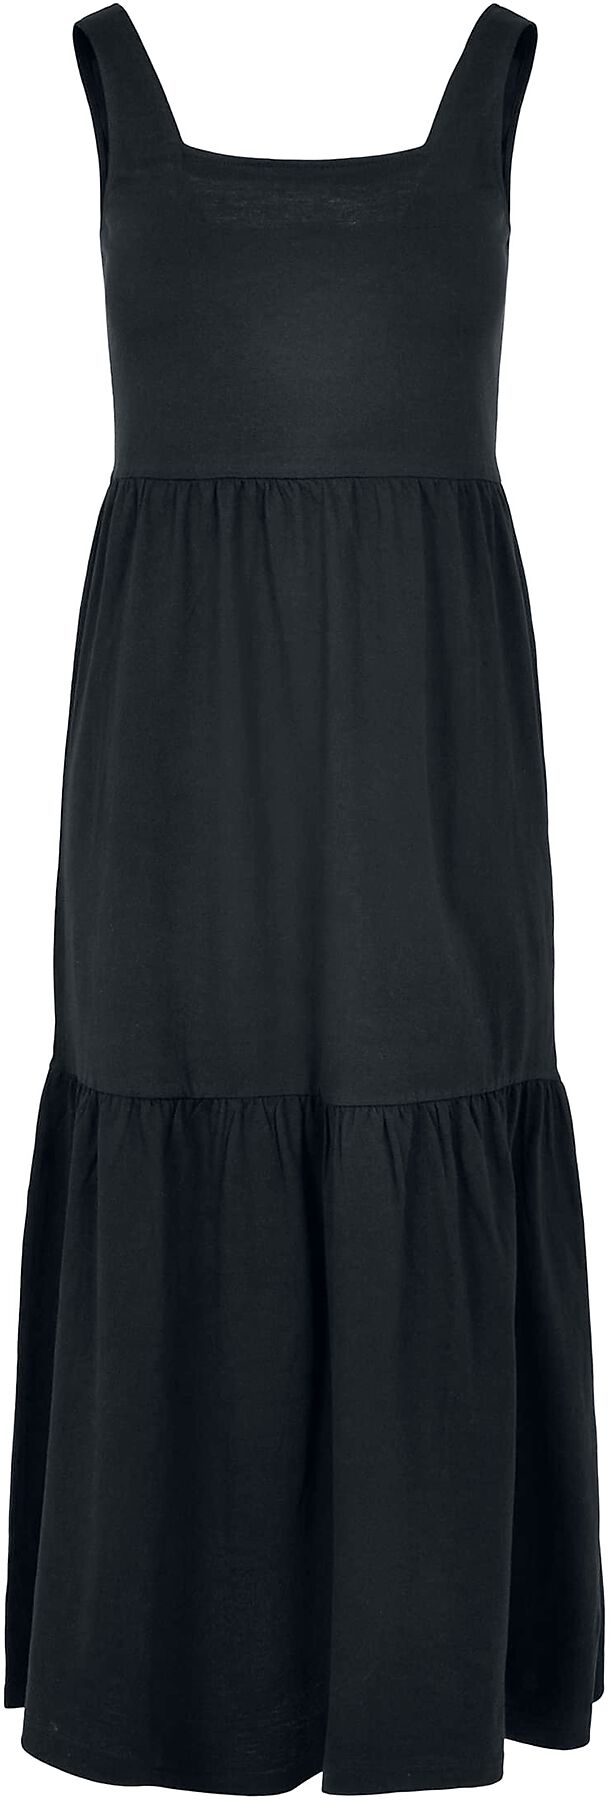 Urban Classics Kleid lang - Ladies Long Valance Summer Dress - XS bis 5XL - für Damen - Größe XS - schwarz